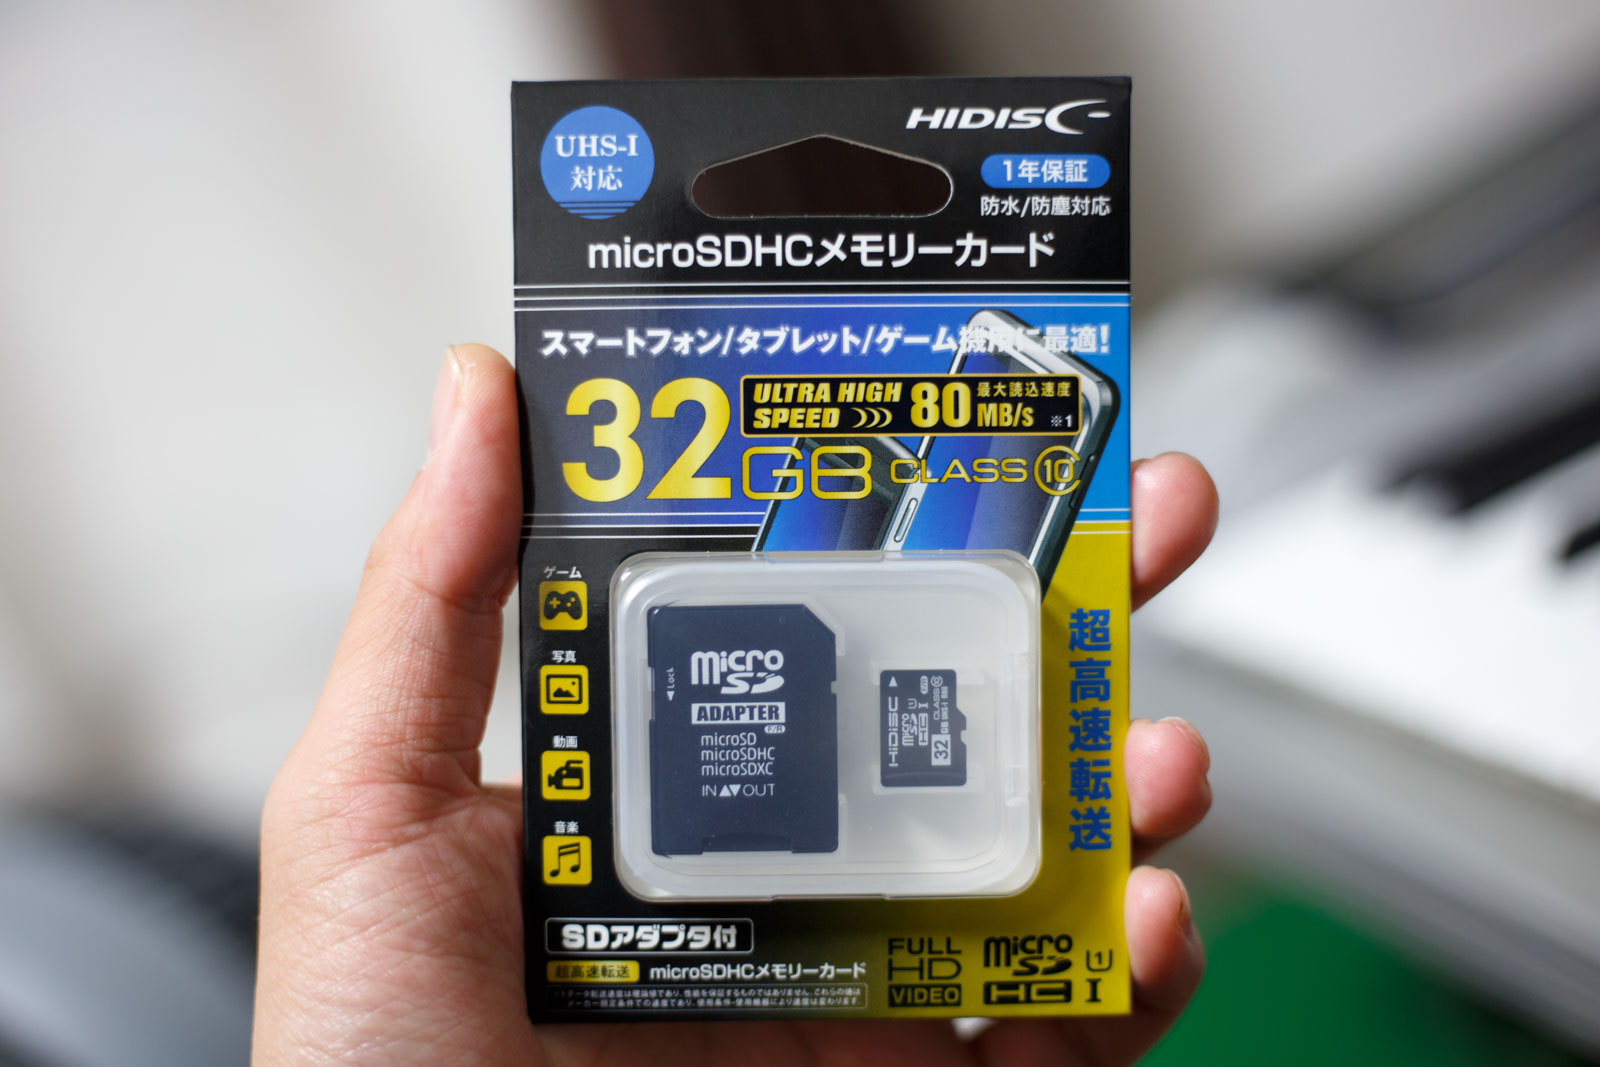 HIDISC・・・!? 安価なMicroSDHCカード32GB - Music Box